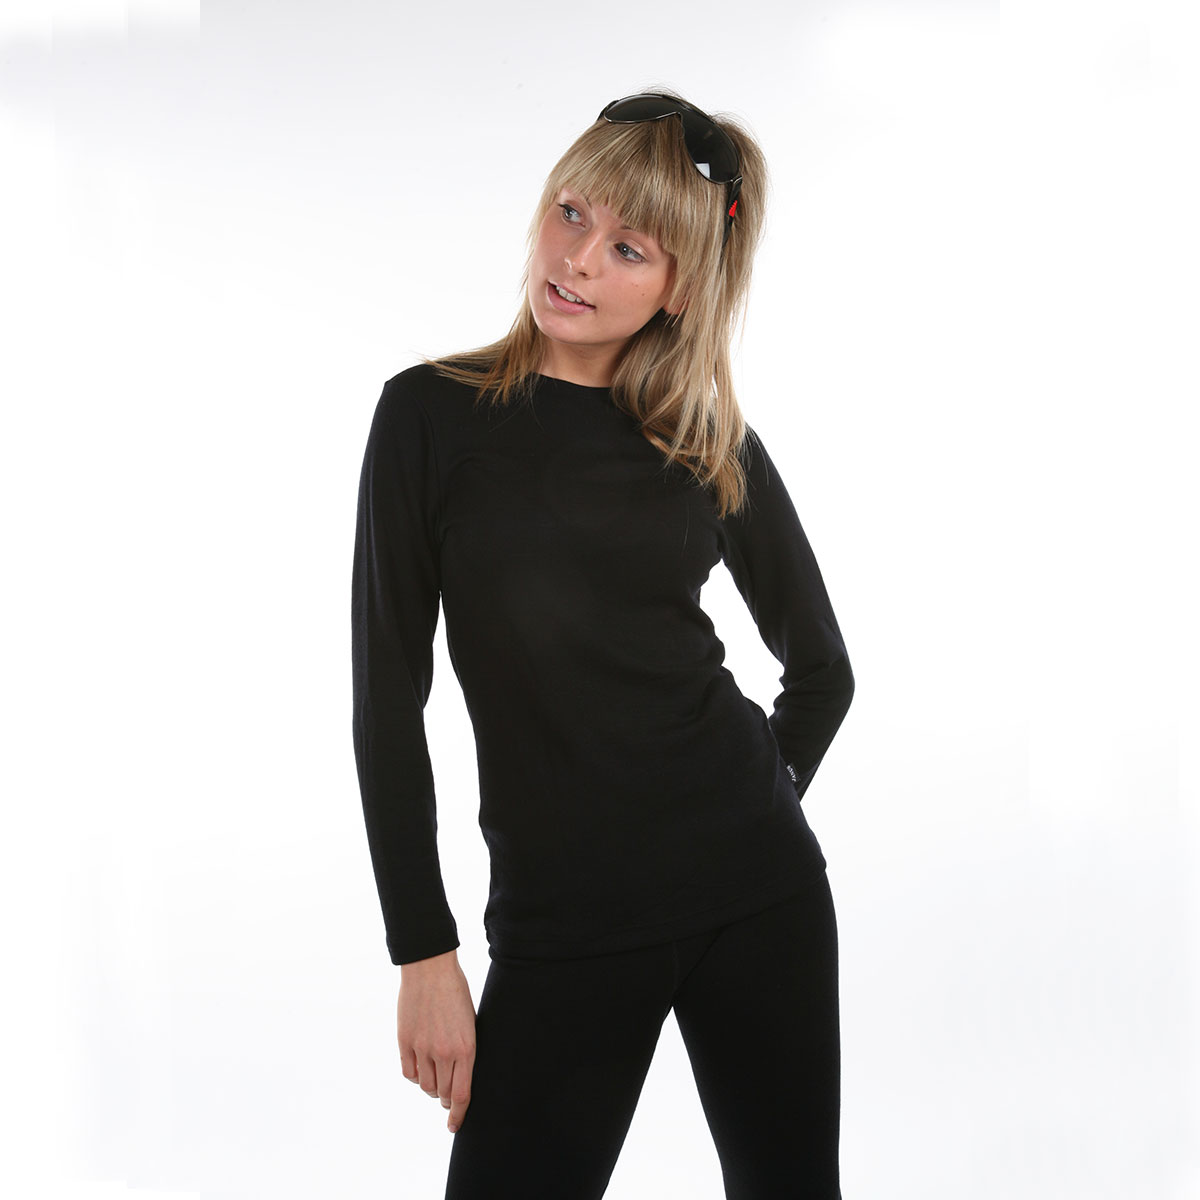 Janus BlackWool dam underställ tröja och långkalsonger 100% merinoull svart